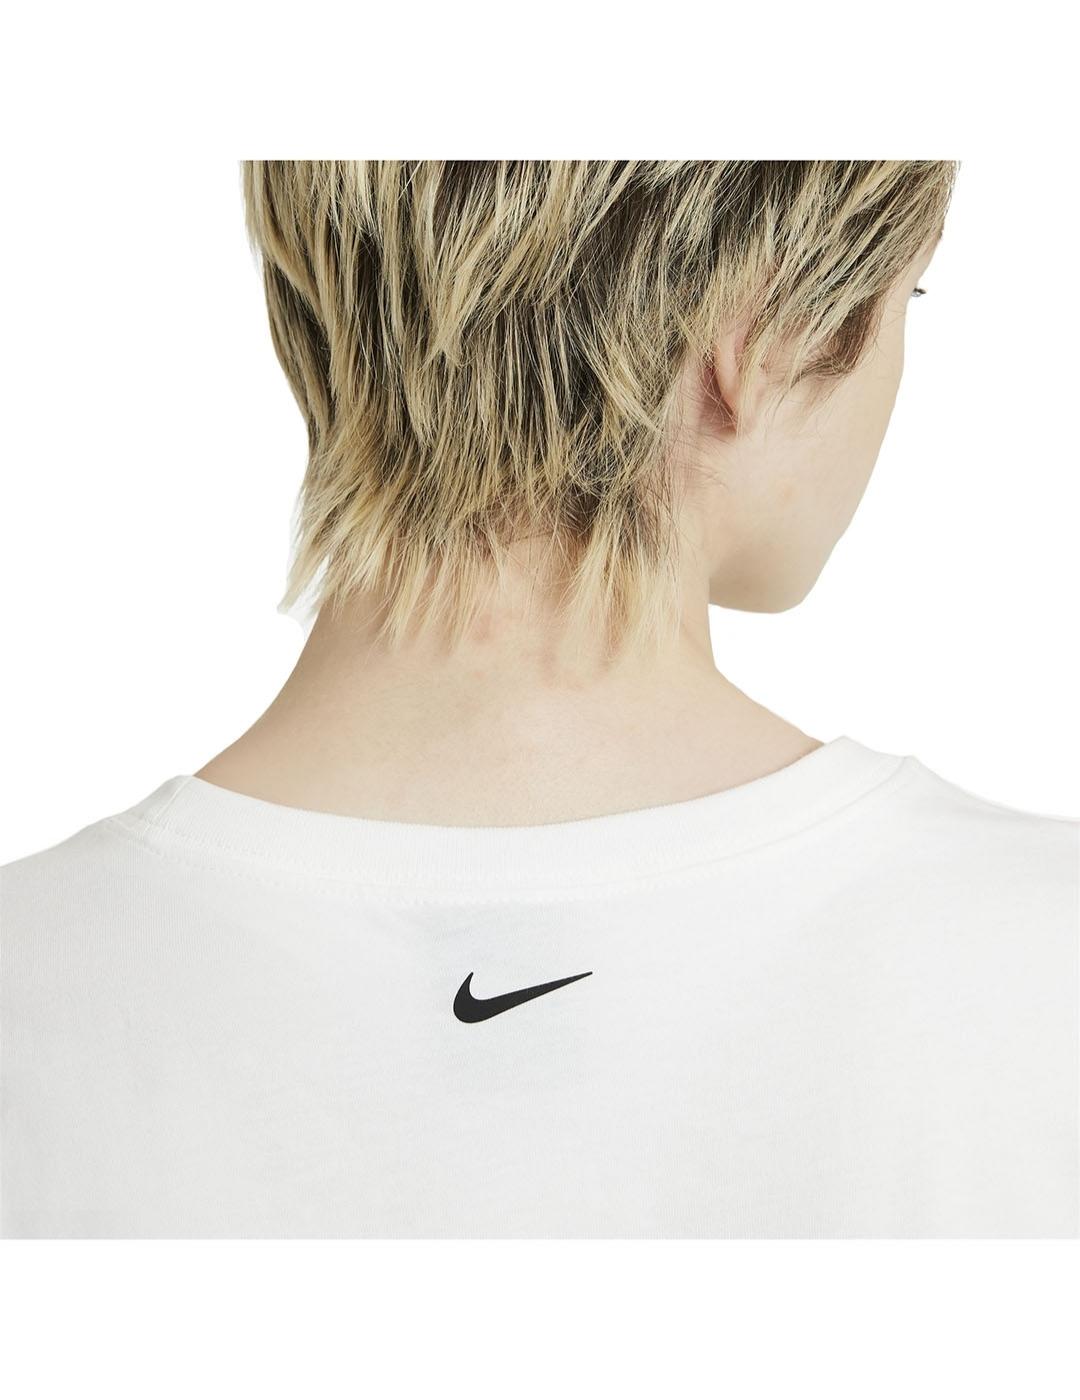 Camiseta Mujer Nike NSW Crop Blanca